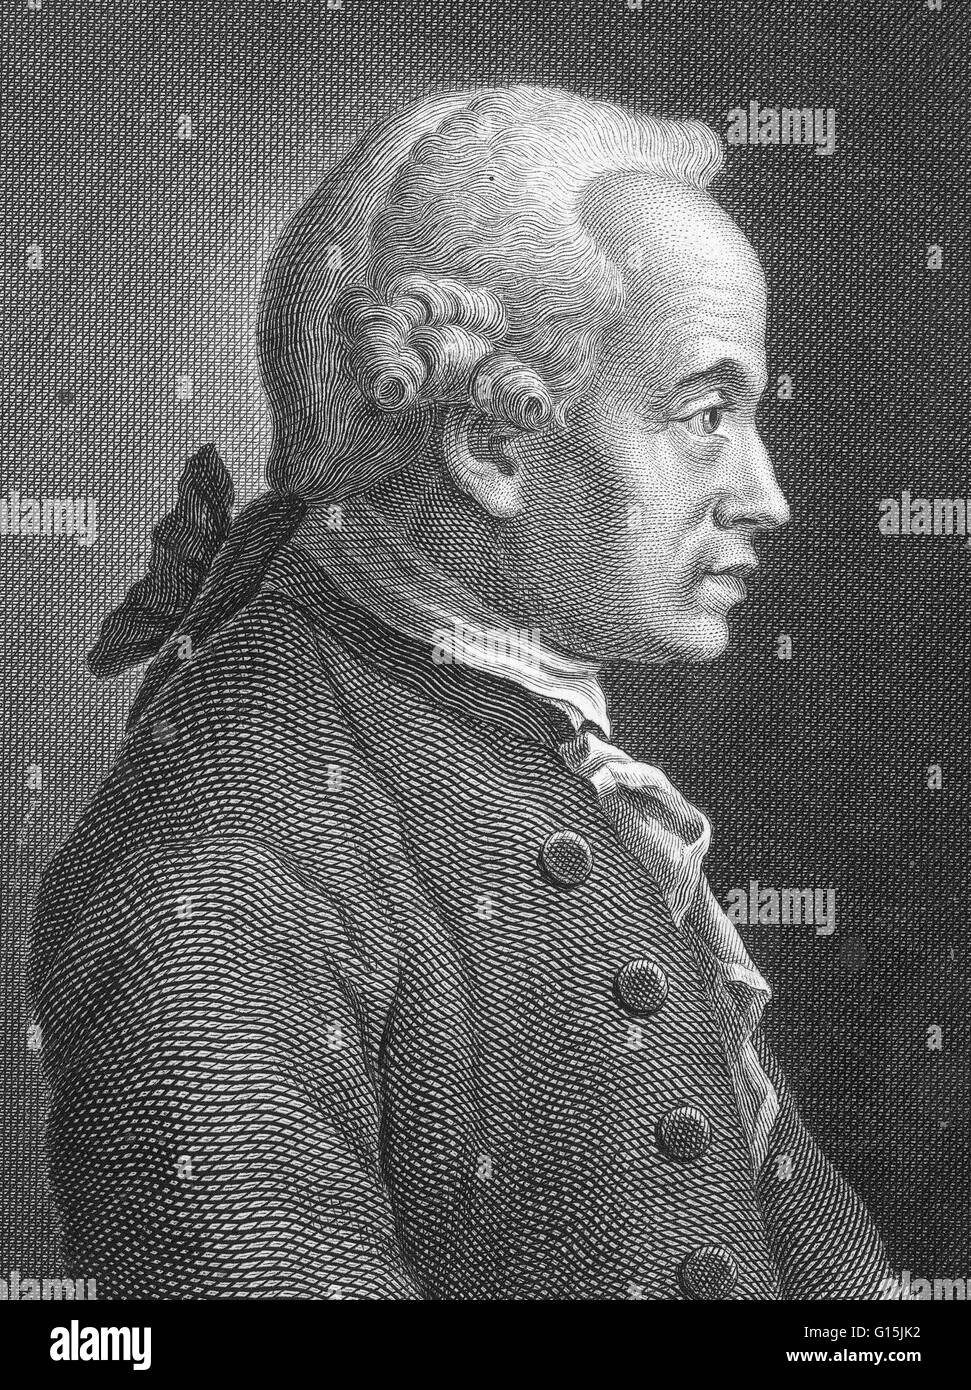 Immanuel Kant (22. April 1724 - 12. Februar 1804) war ein deutscher Philosoph, recherchiert, hielt Vorträge und schrieb über Philosophie und Anthropologie im Zeitalter der Aufklärung am Ende des 18. Jahrhunderts. Sein Hauptwerk, der Kritik der reinen Vernunft (1781), aime Stockfoto